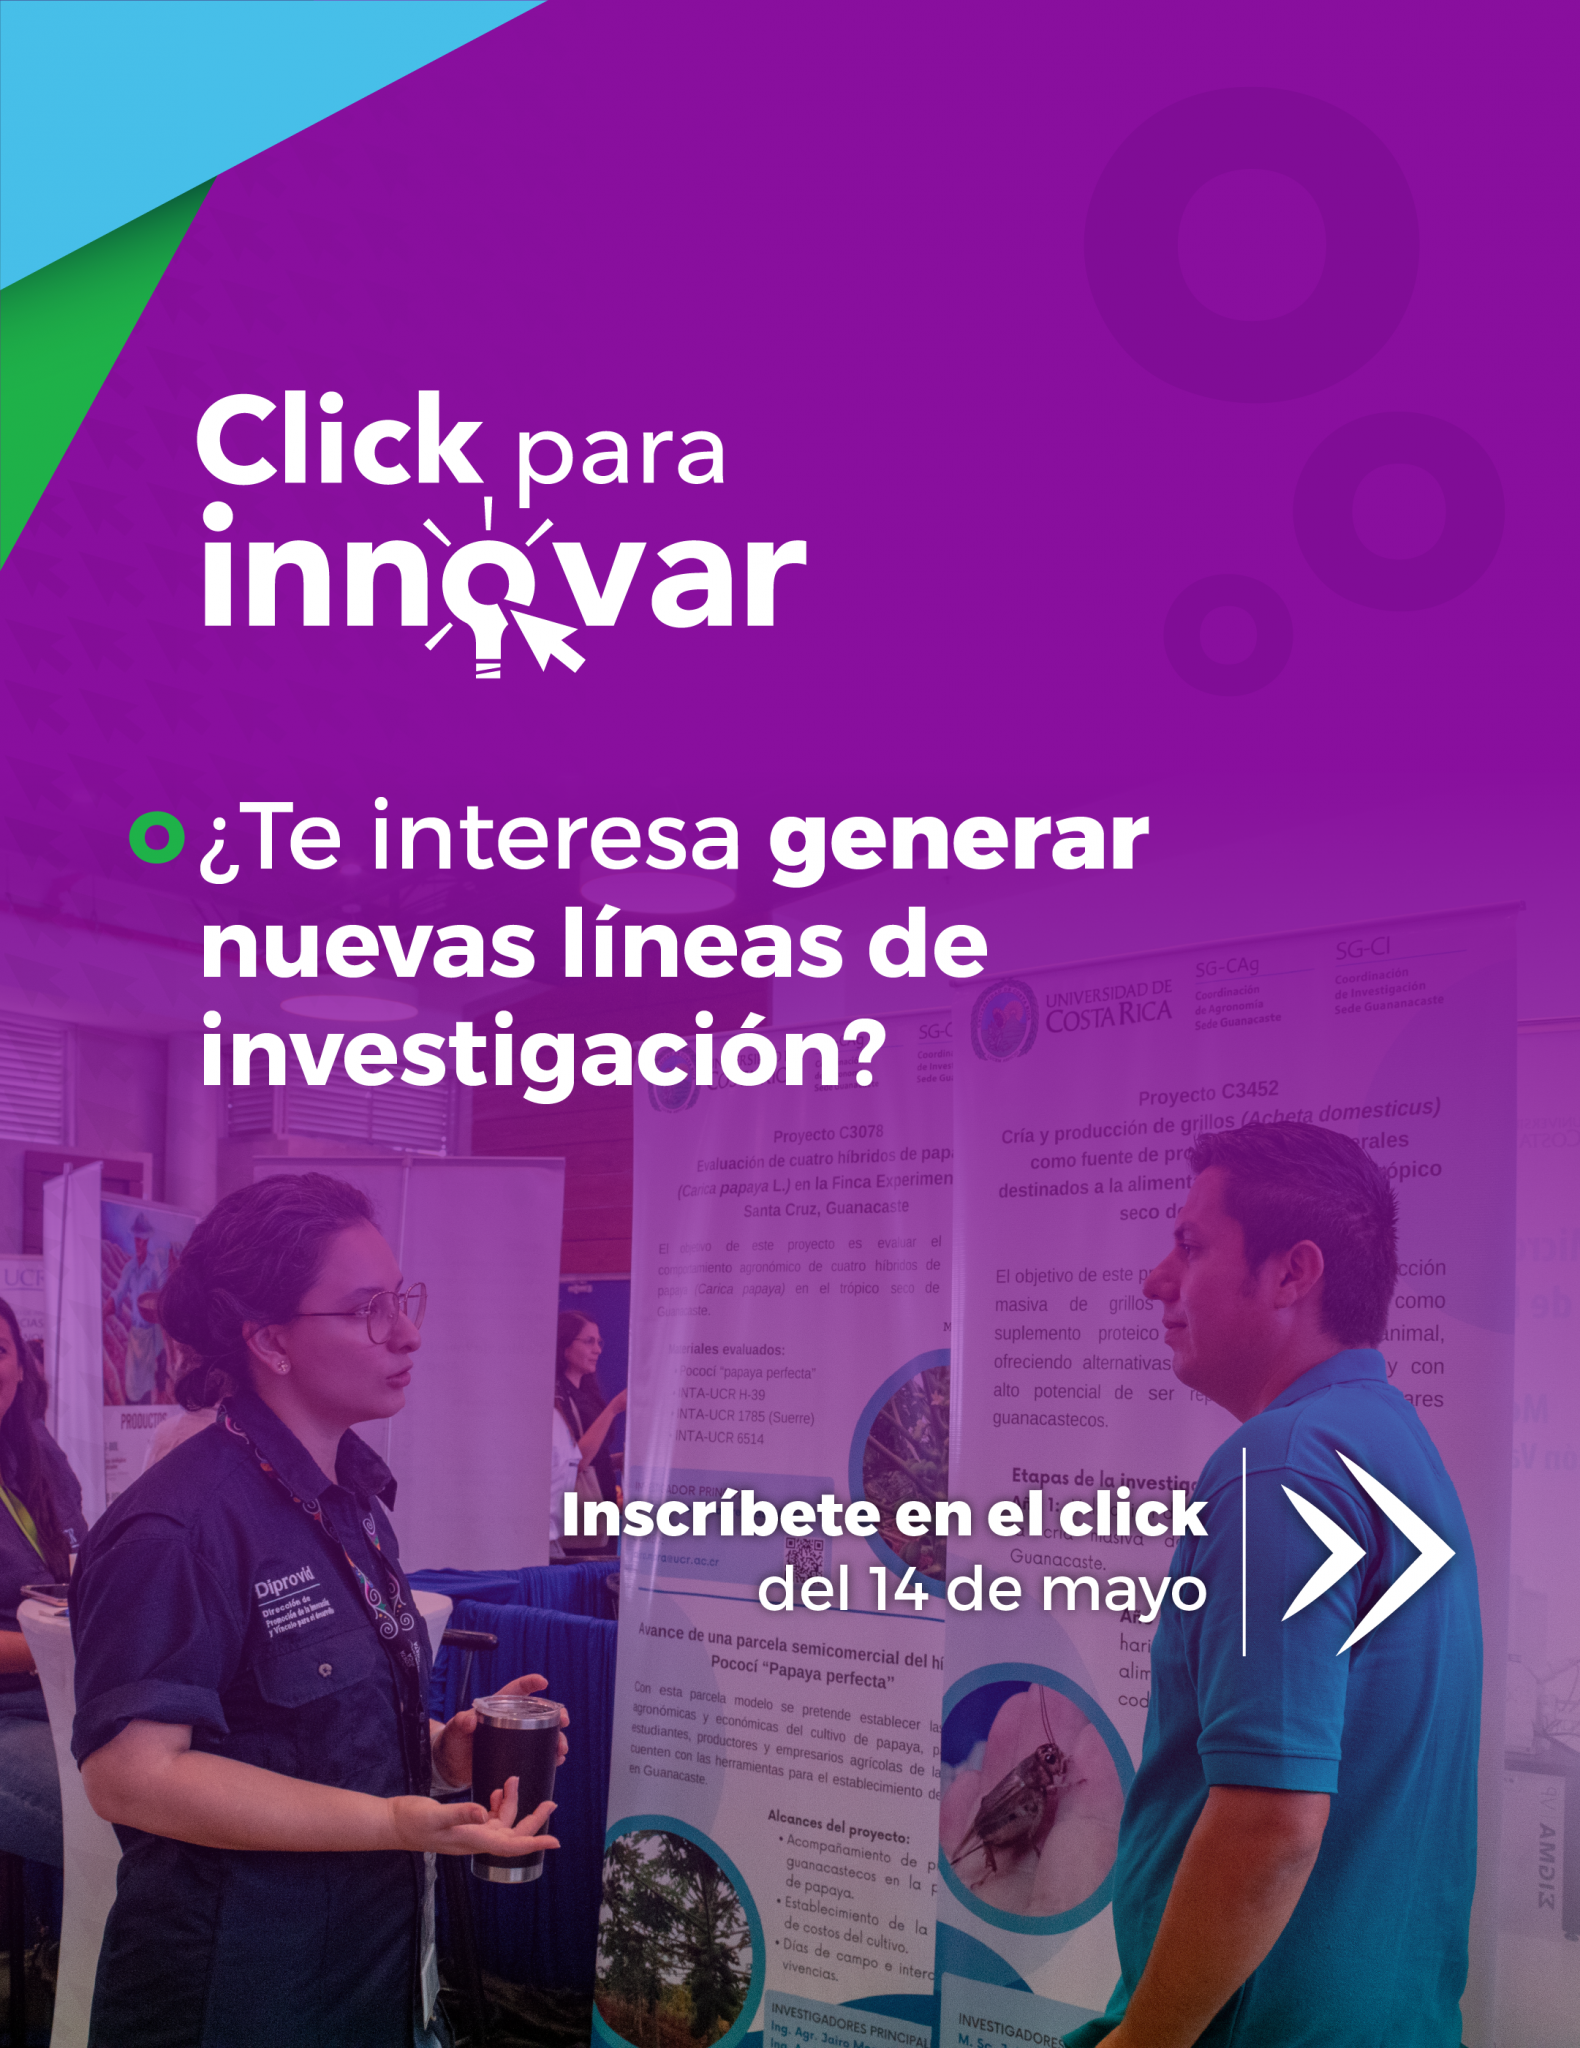 Click para innovar: ¿Te interesa generar nuevas líneas de investigación?